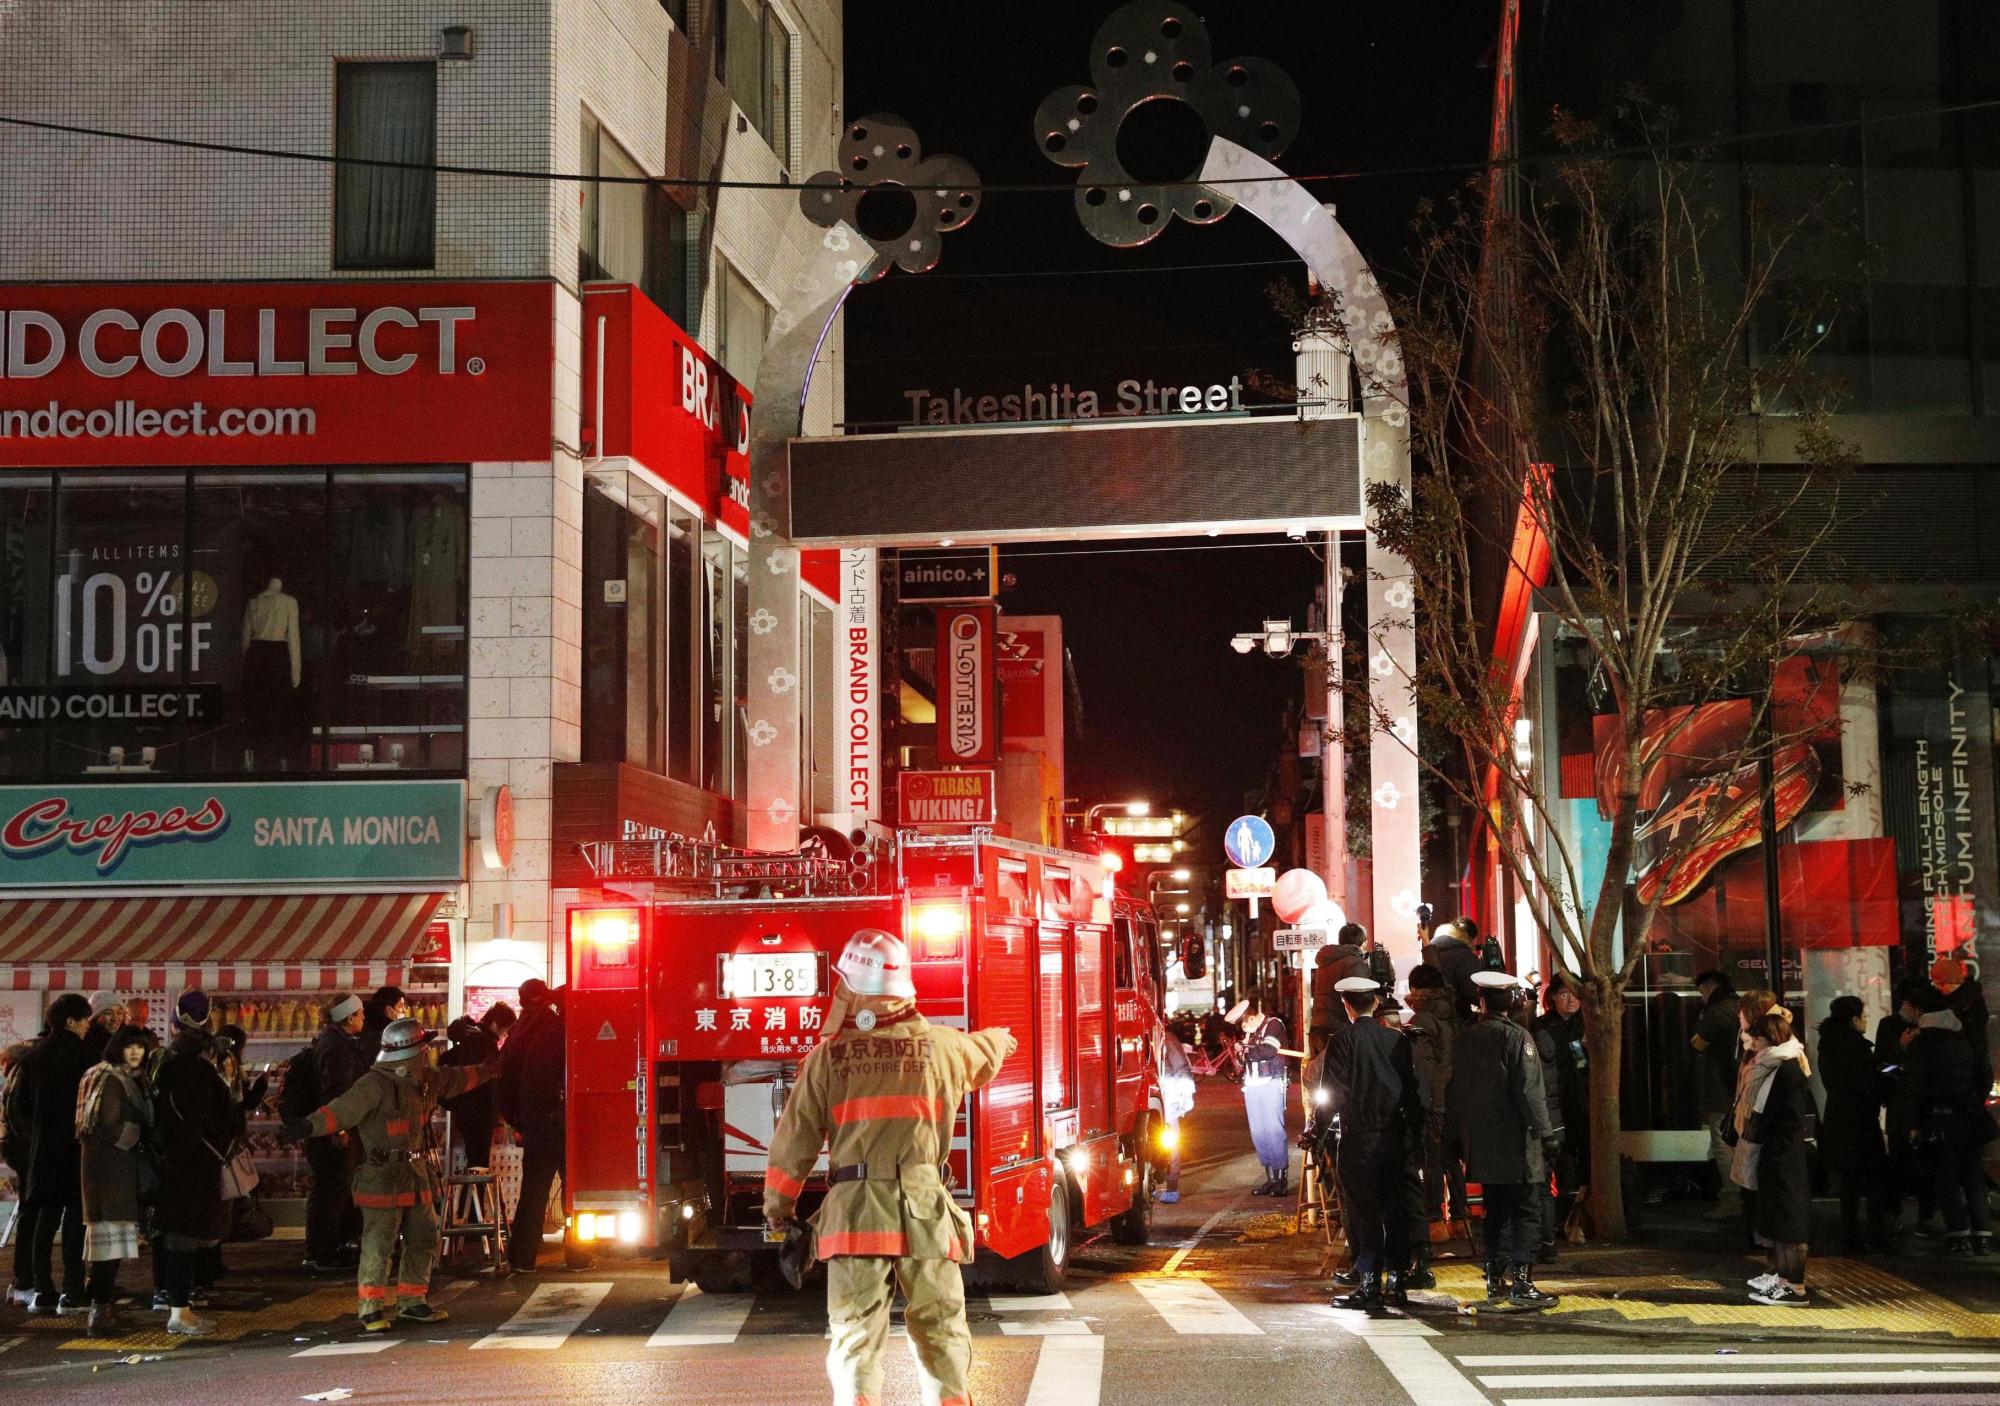 Awal tahun baru, seorang pengemudi mobil menabrak pejalan kaki di Takeshita Street, melukai  9 orang